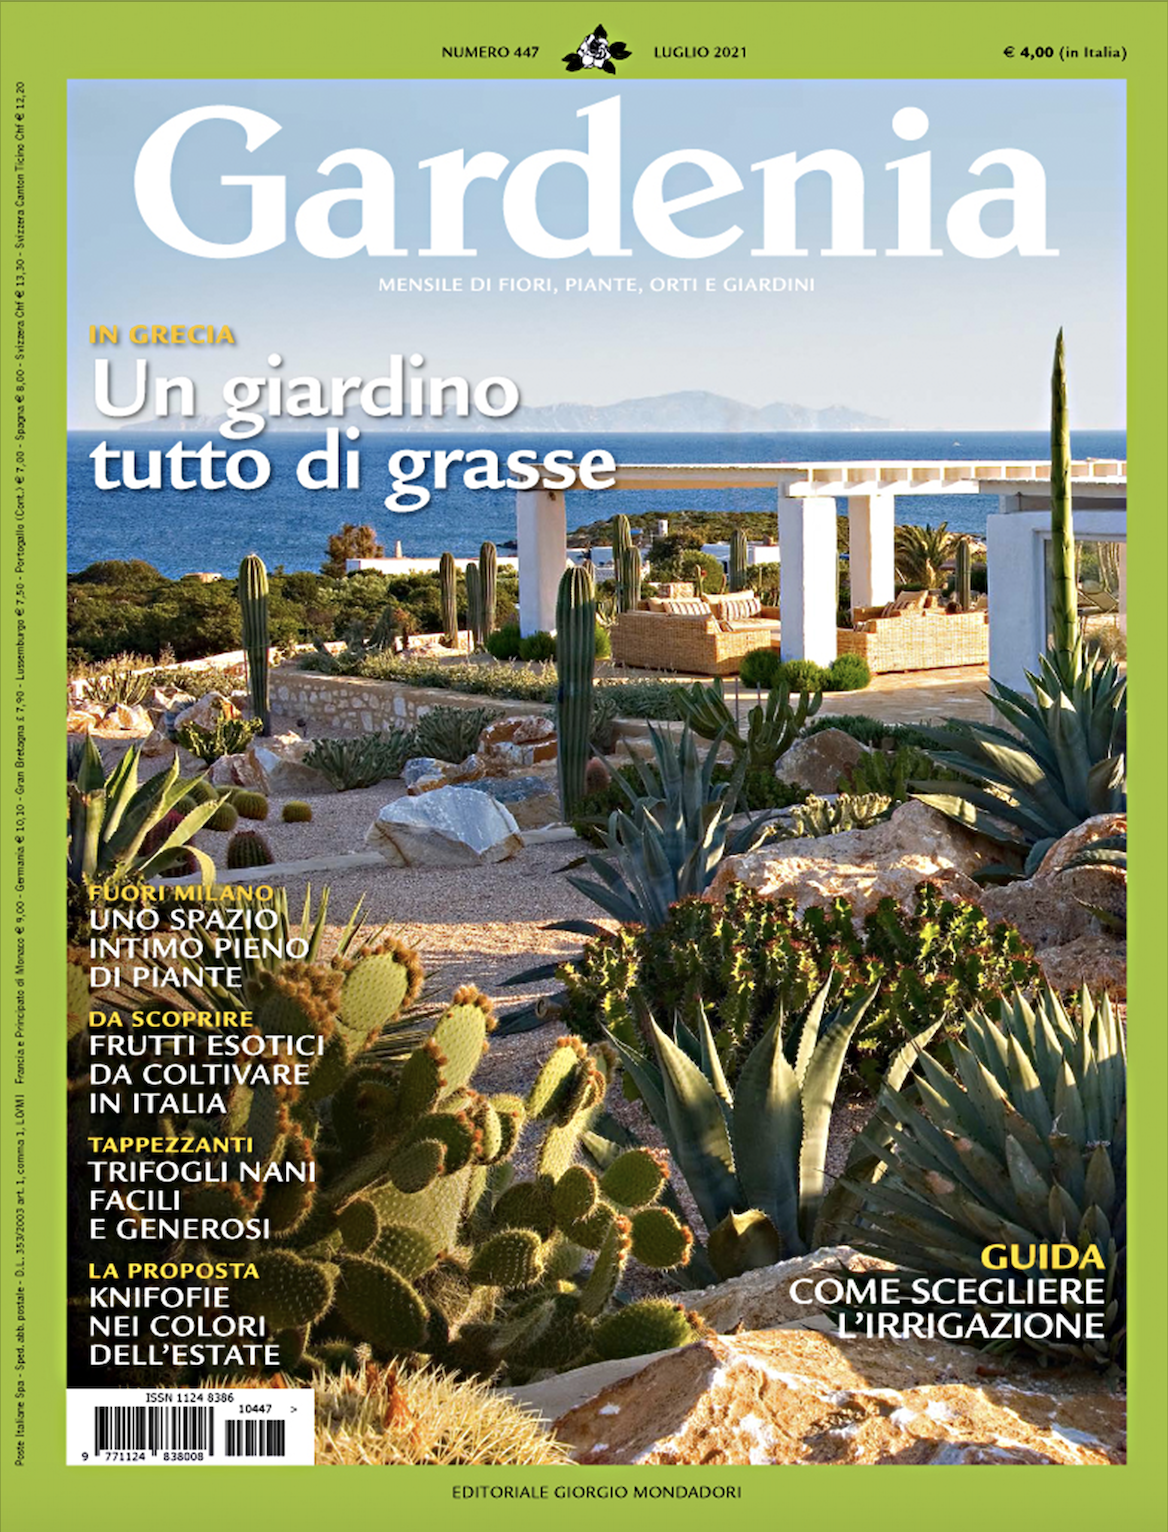 Domenico Mori in Gardenia Piscine & Giardini Luglio 2021 - cover gardenia